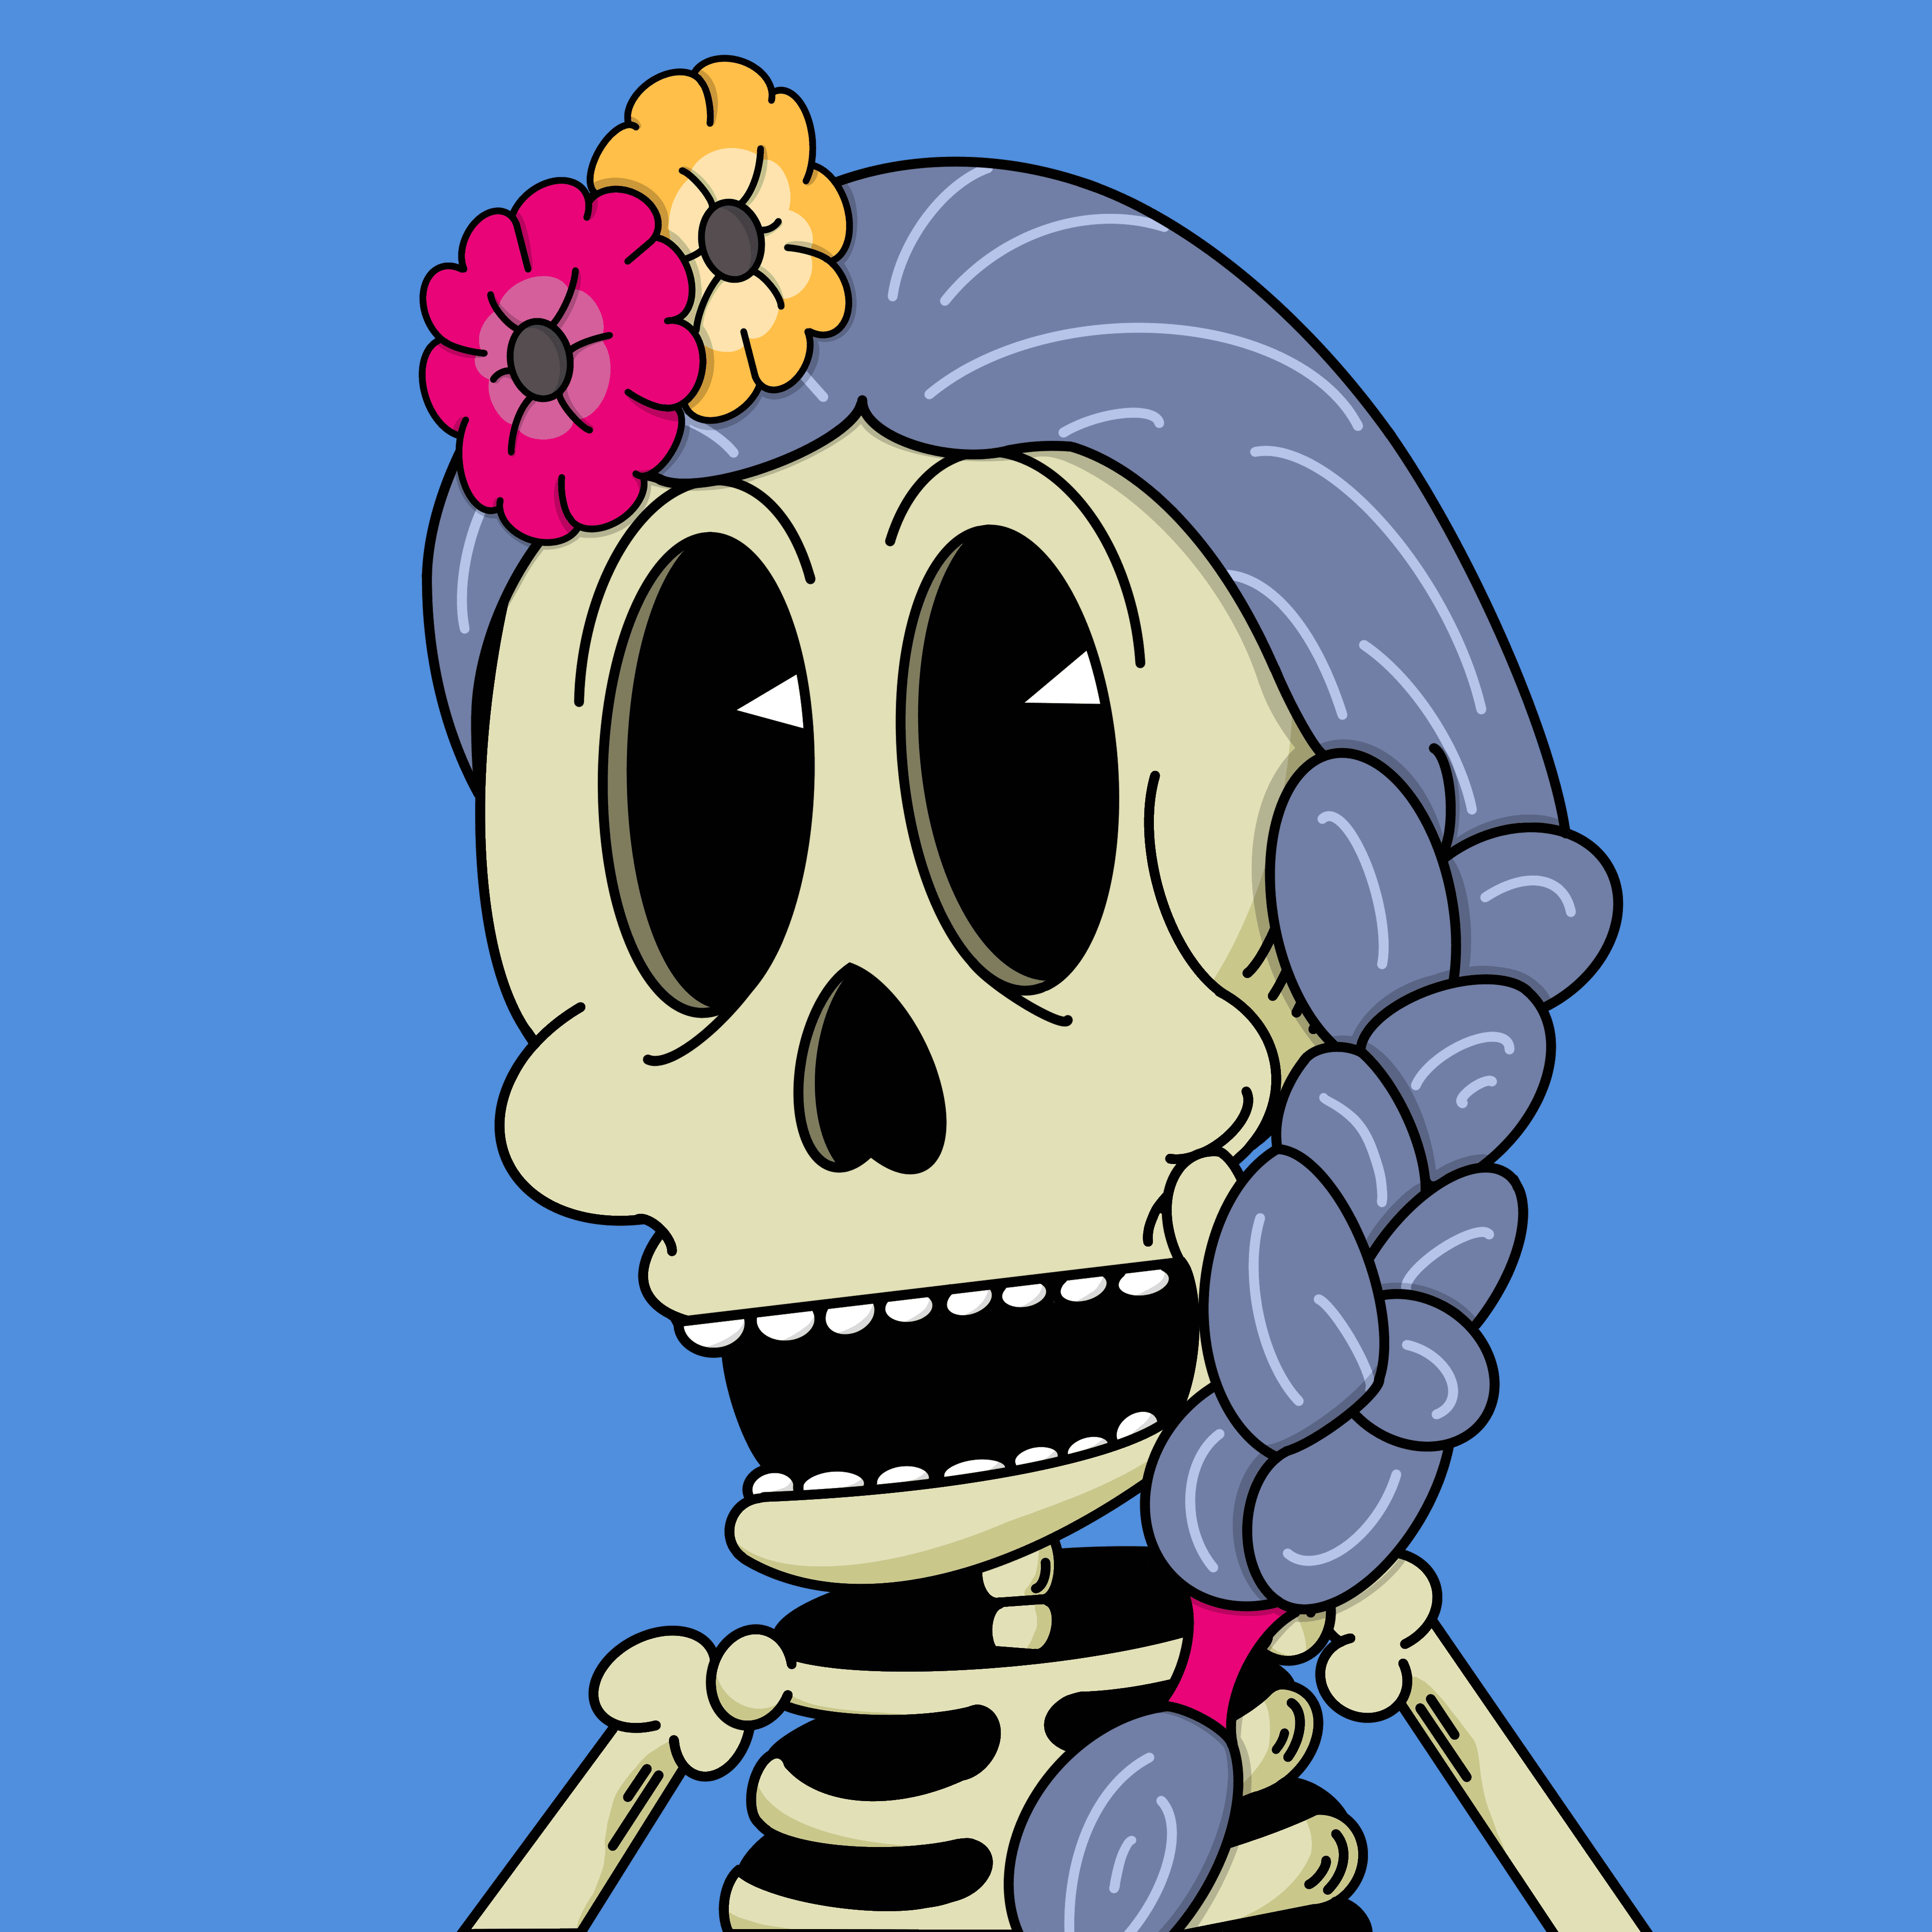 Awkward Skeleton #19